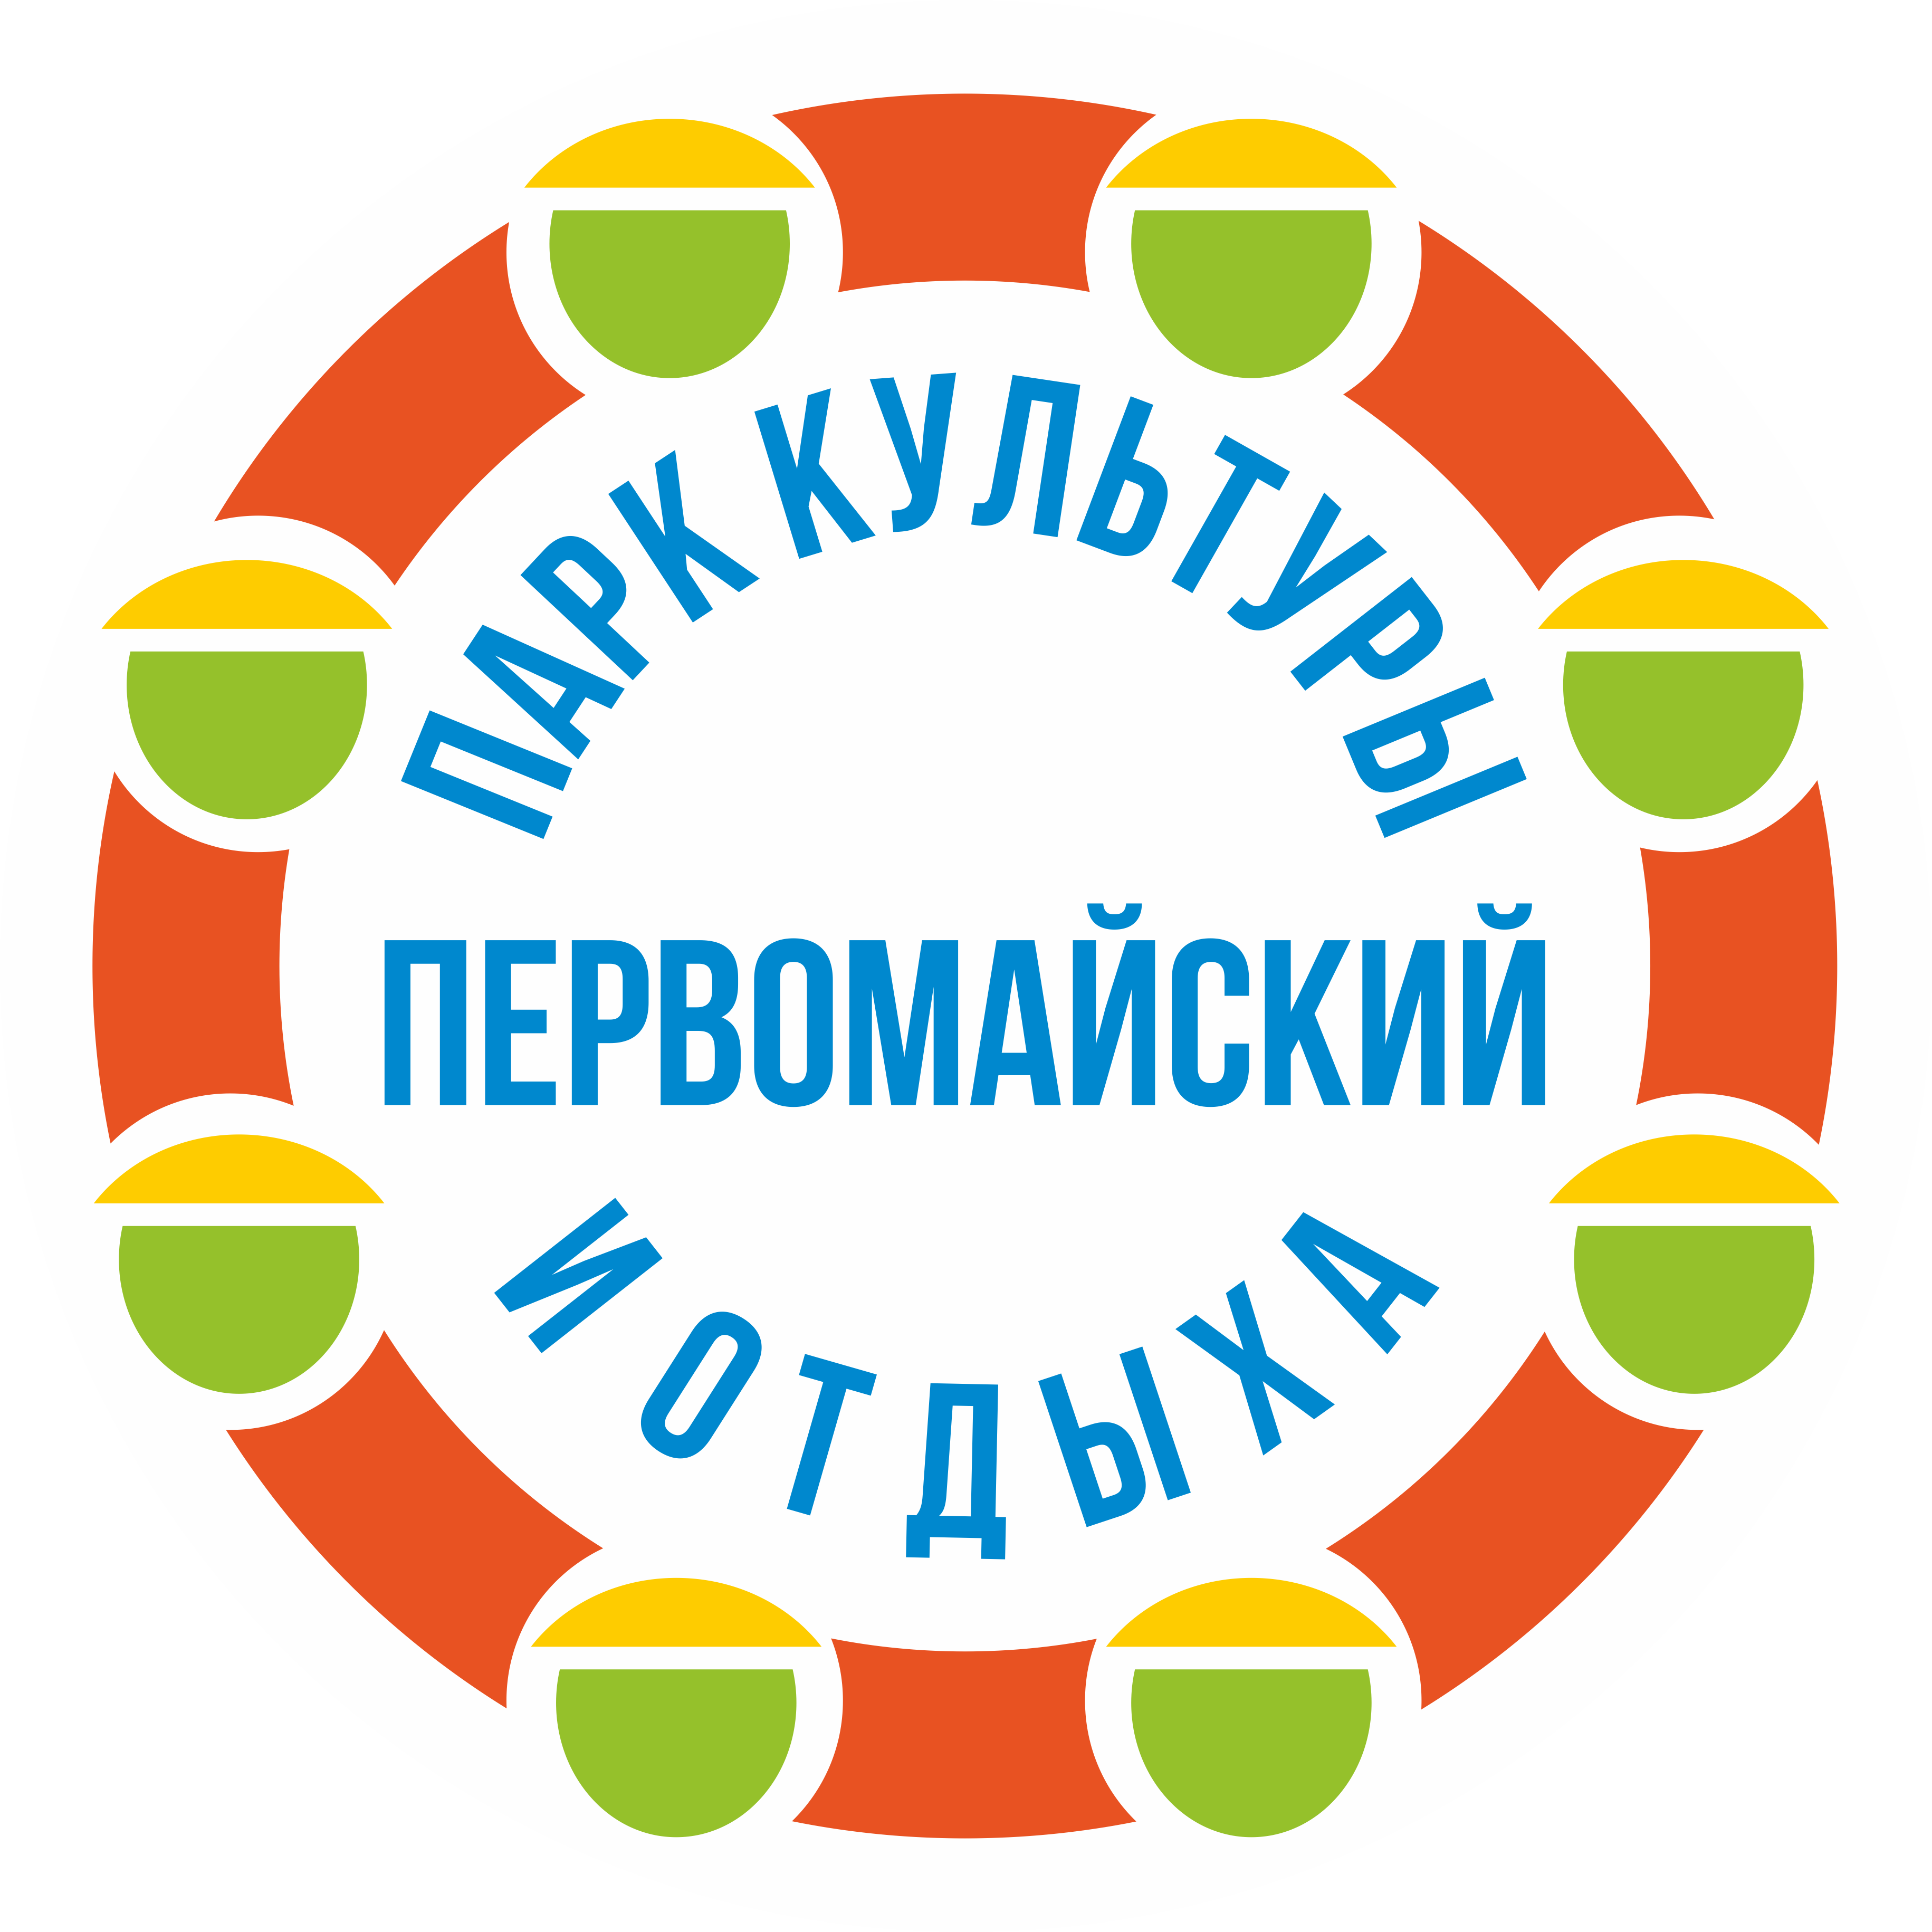 http://Port-web1:920/pko/pkio_pervomaiskii/DocLib2/Логотип.png